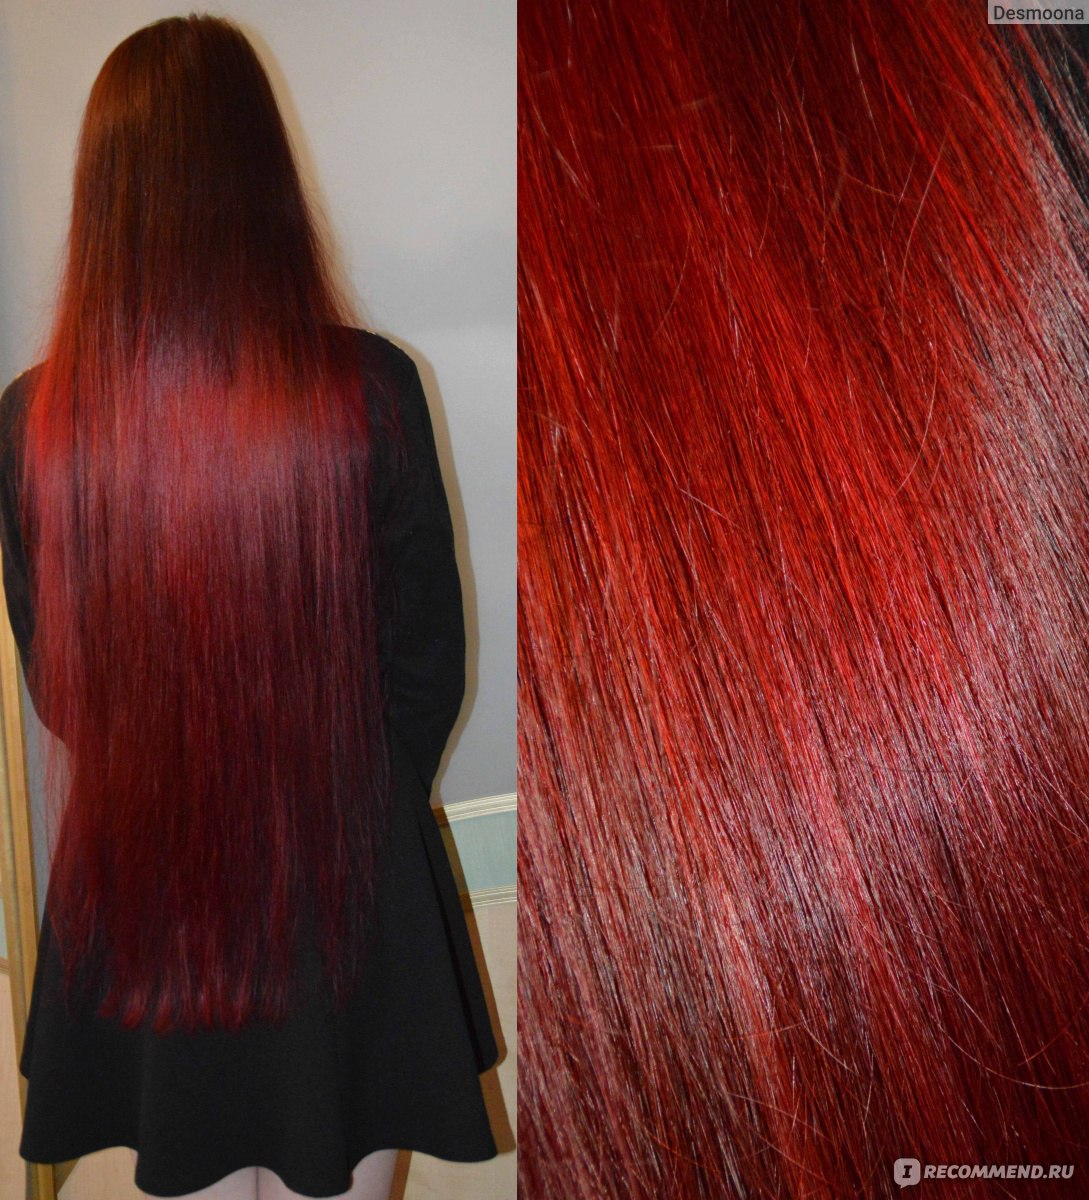 Красные волосы без осветления на темных волосах. Тоник красное дерево на темные. Тоника 5.35 красный янтарь на темные волосы. Красный тоник на темные волосы. Красная тоника.